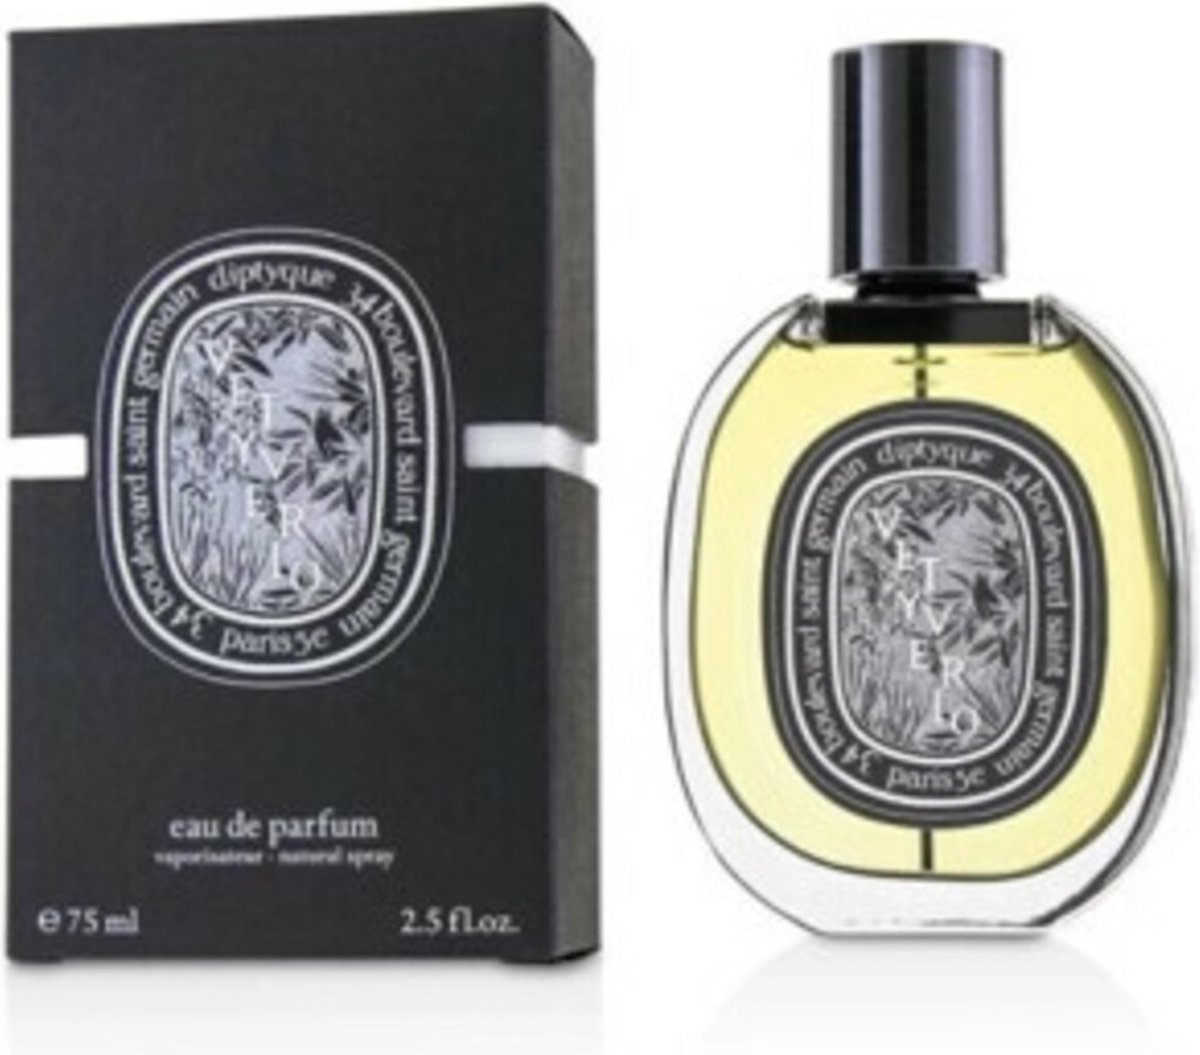 Diptyque Vetyverio Eau de Parfum Spray 75 ml